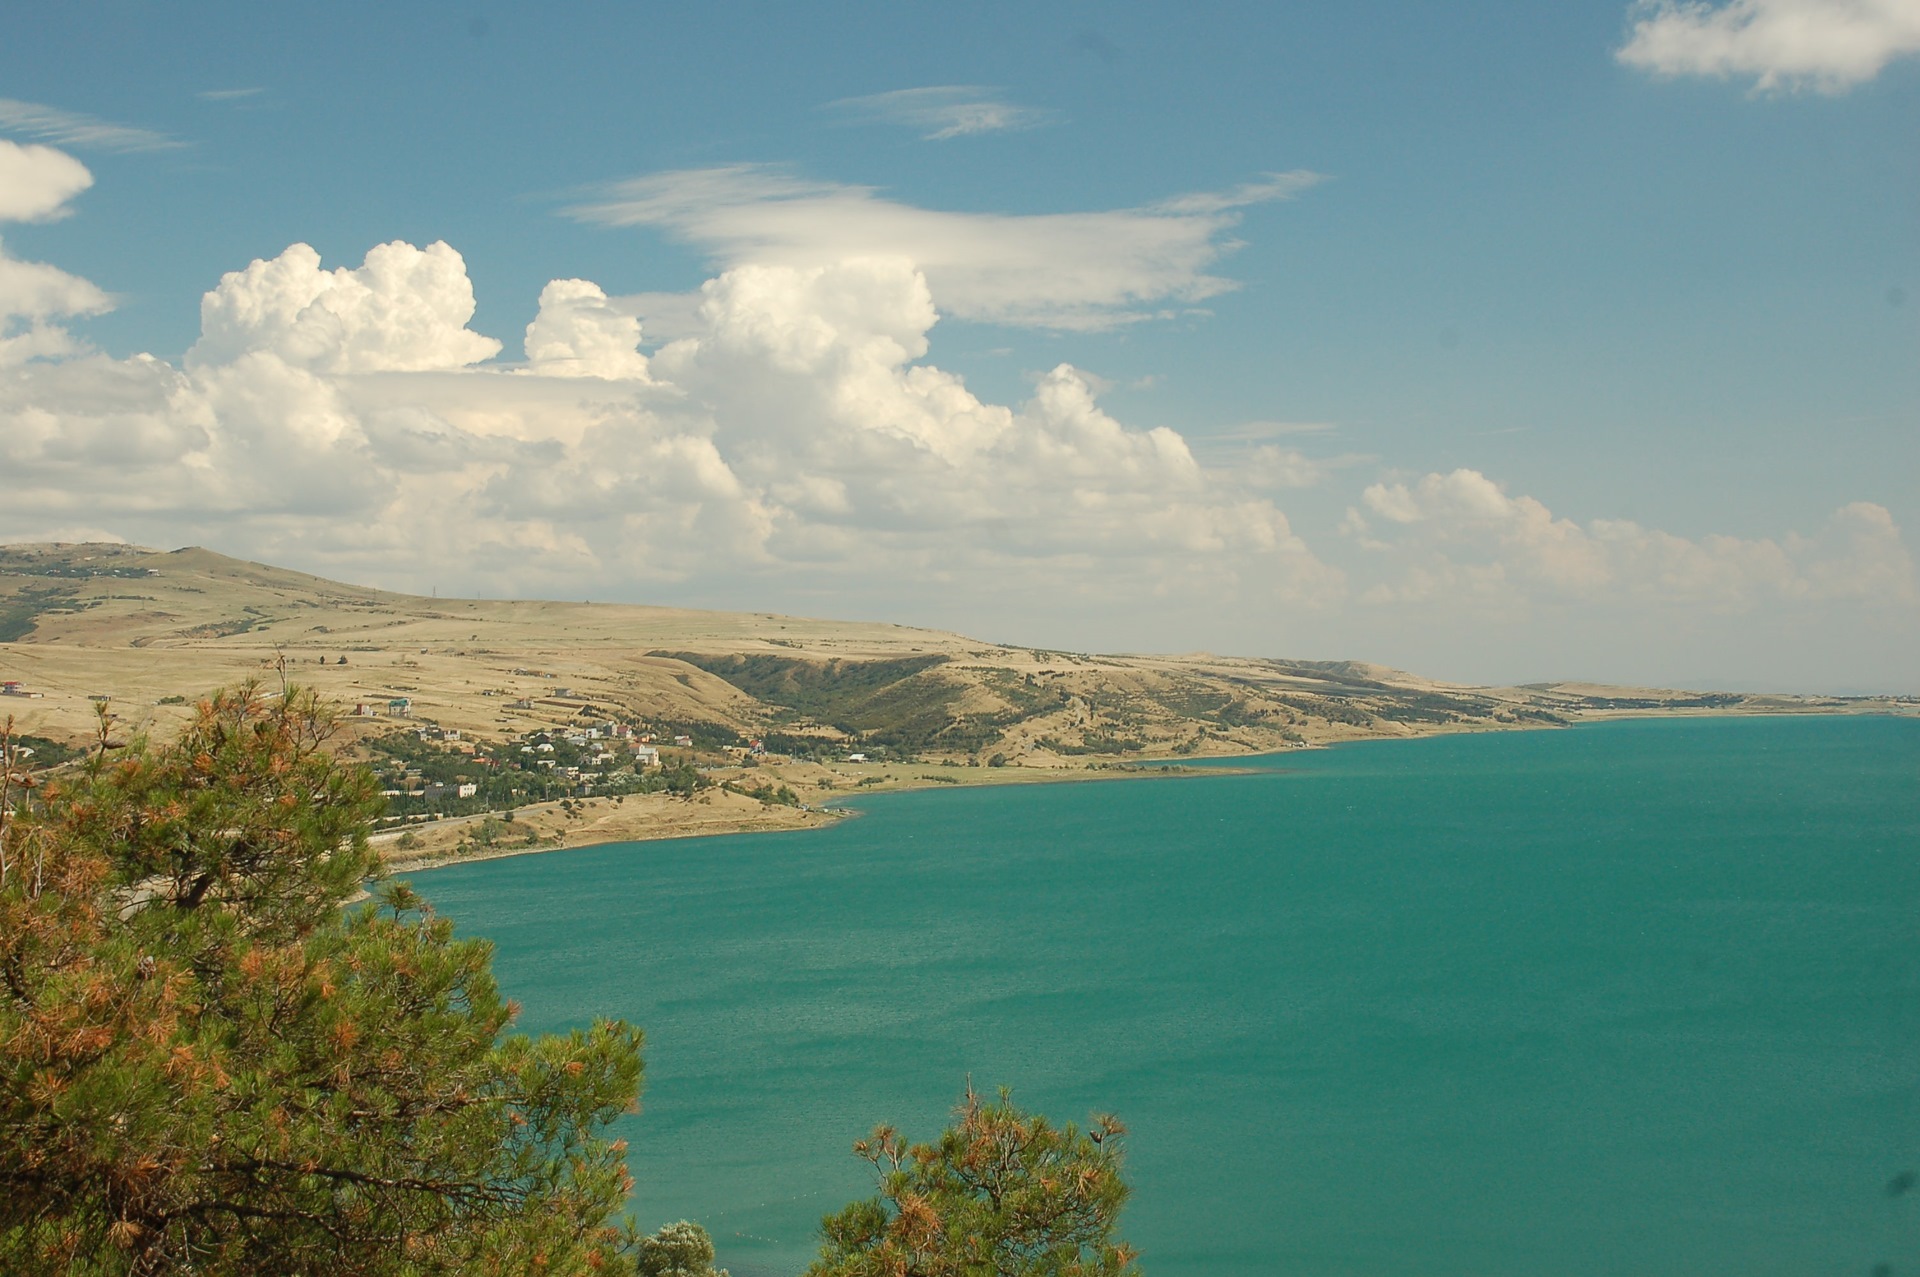 Тбилисское море – самое глубокое водохранилище Грузии